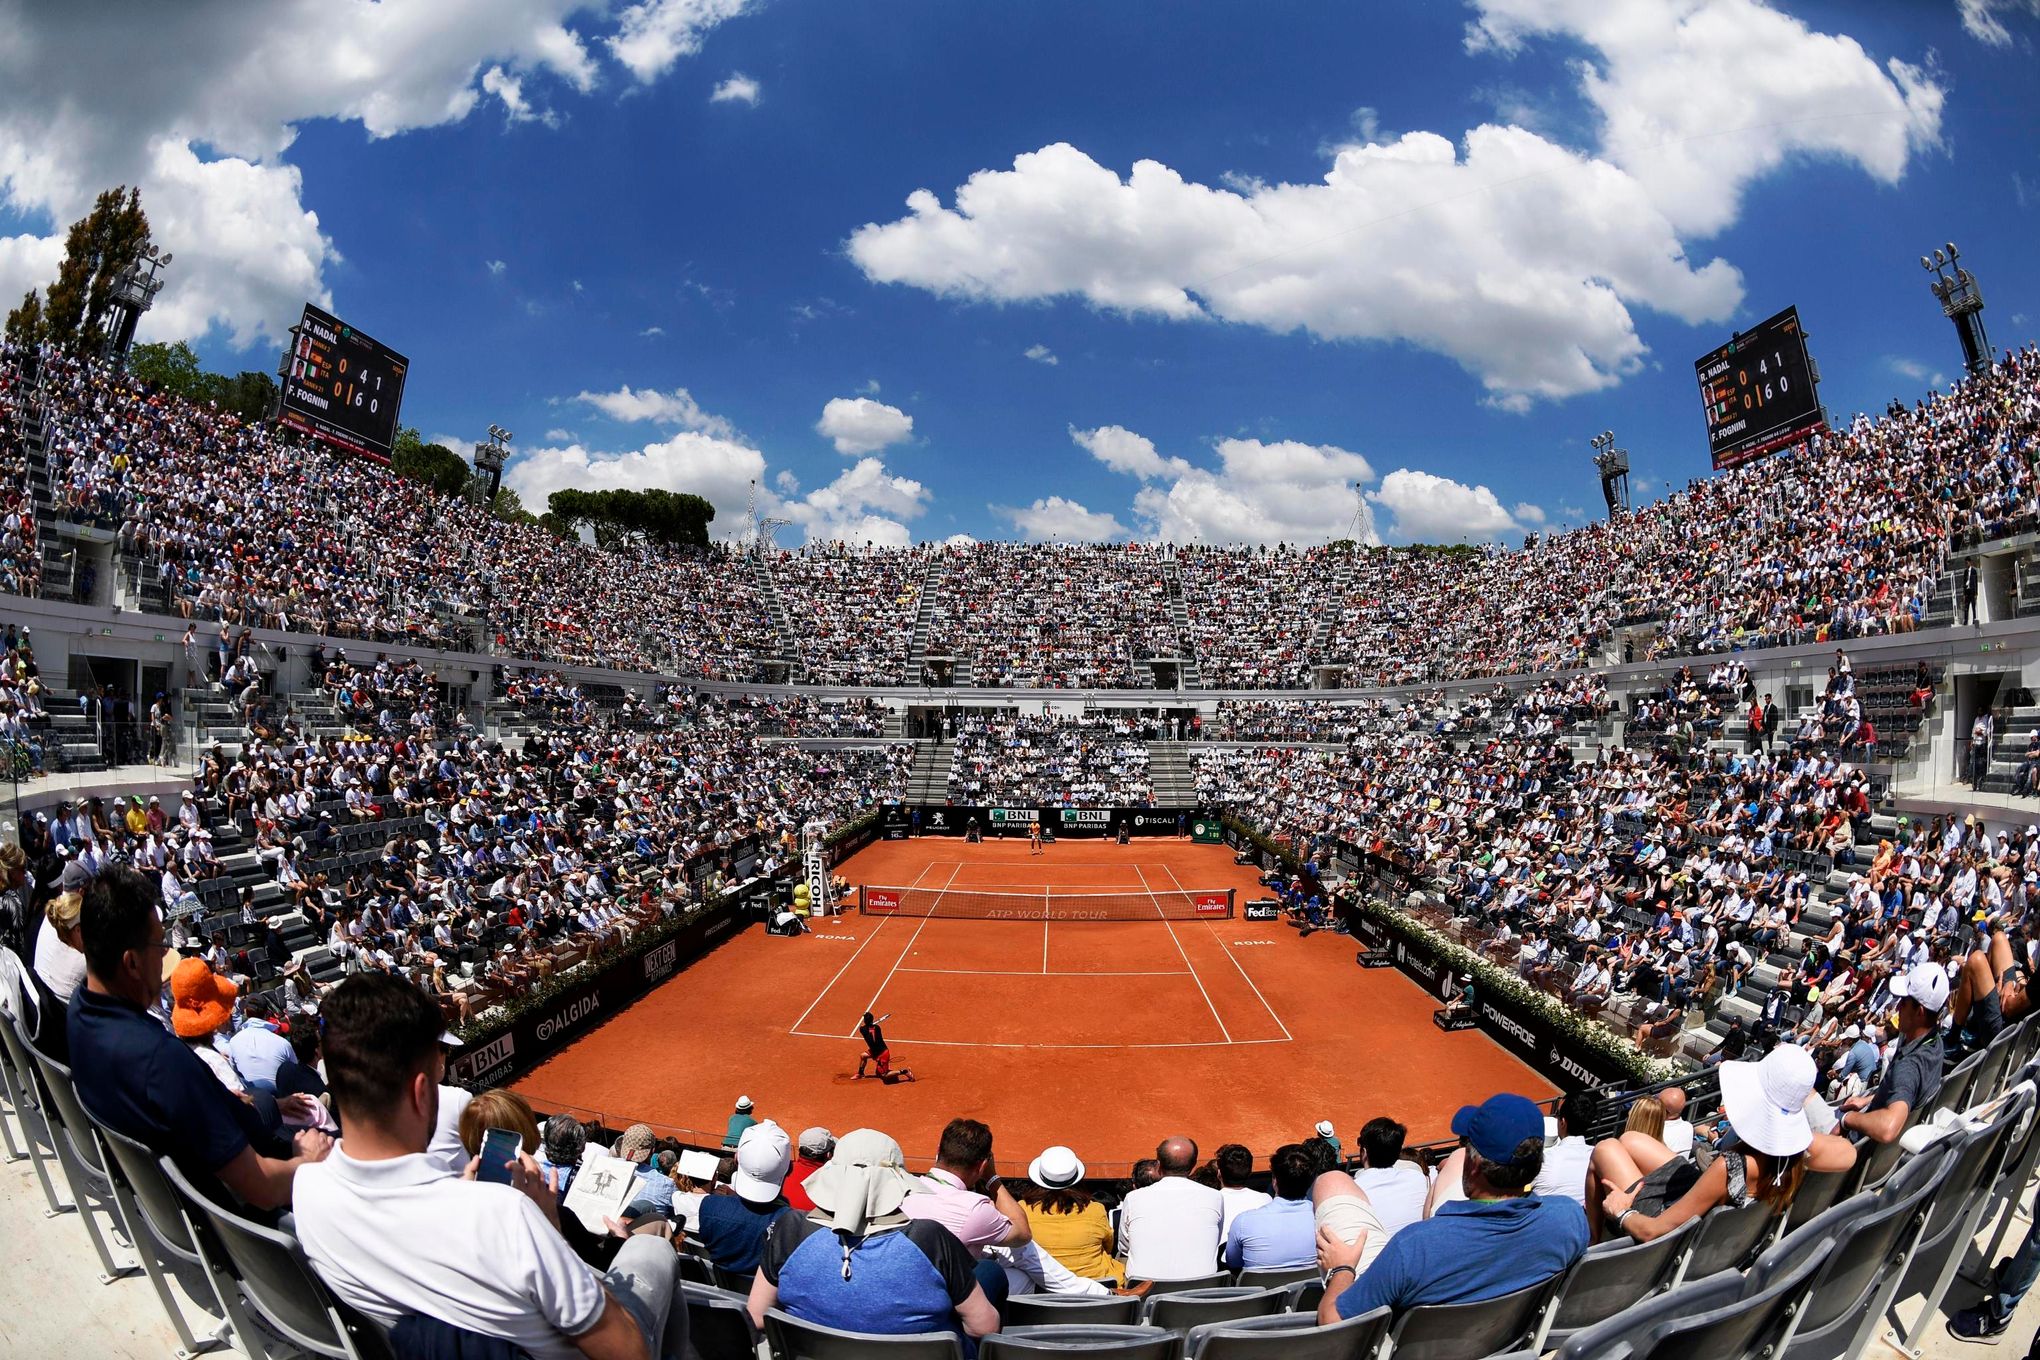 Foro Italico, Rome, Italy. 19th May, 2018. Italian Open Tennis